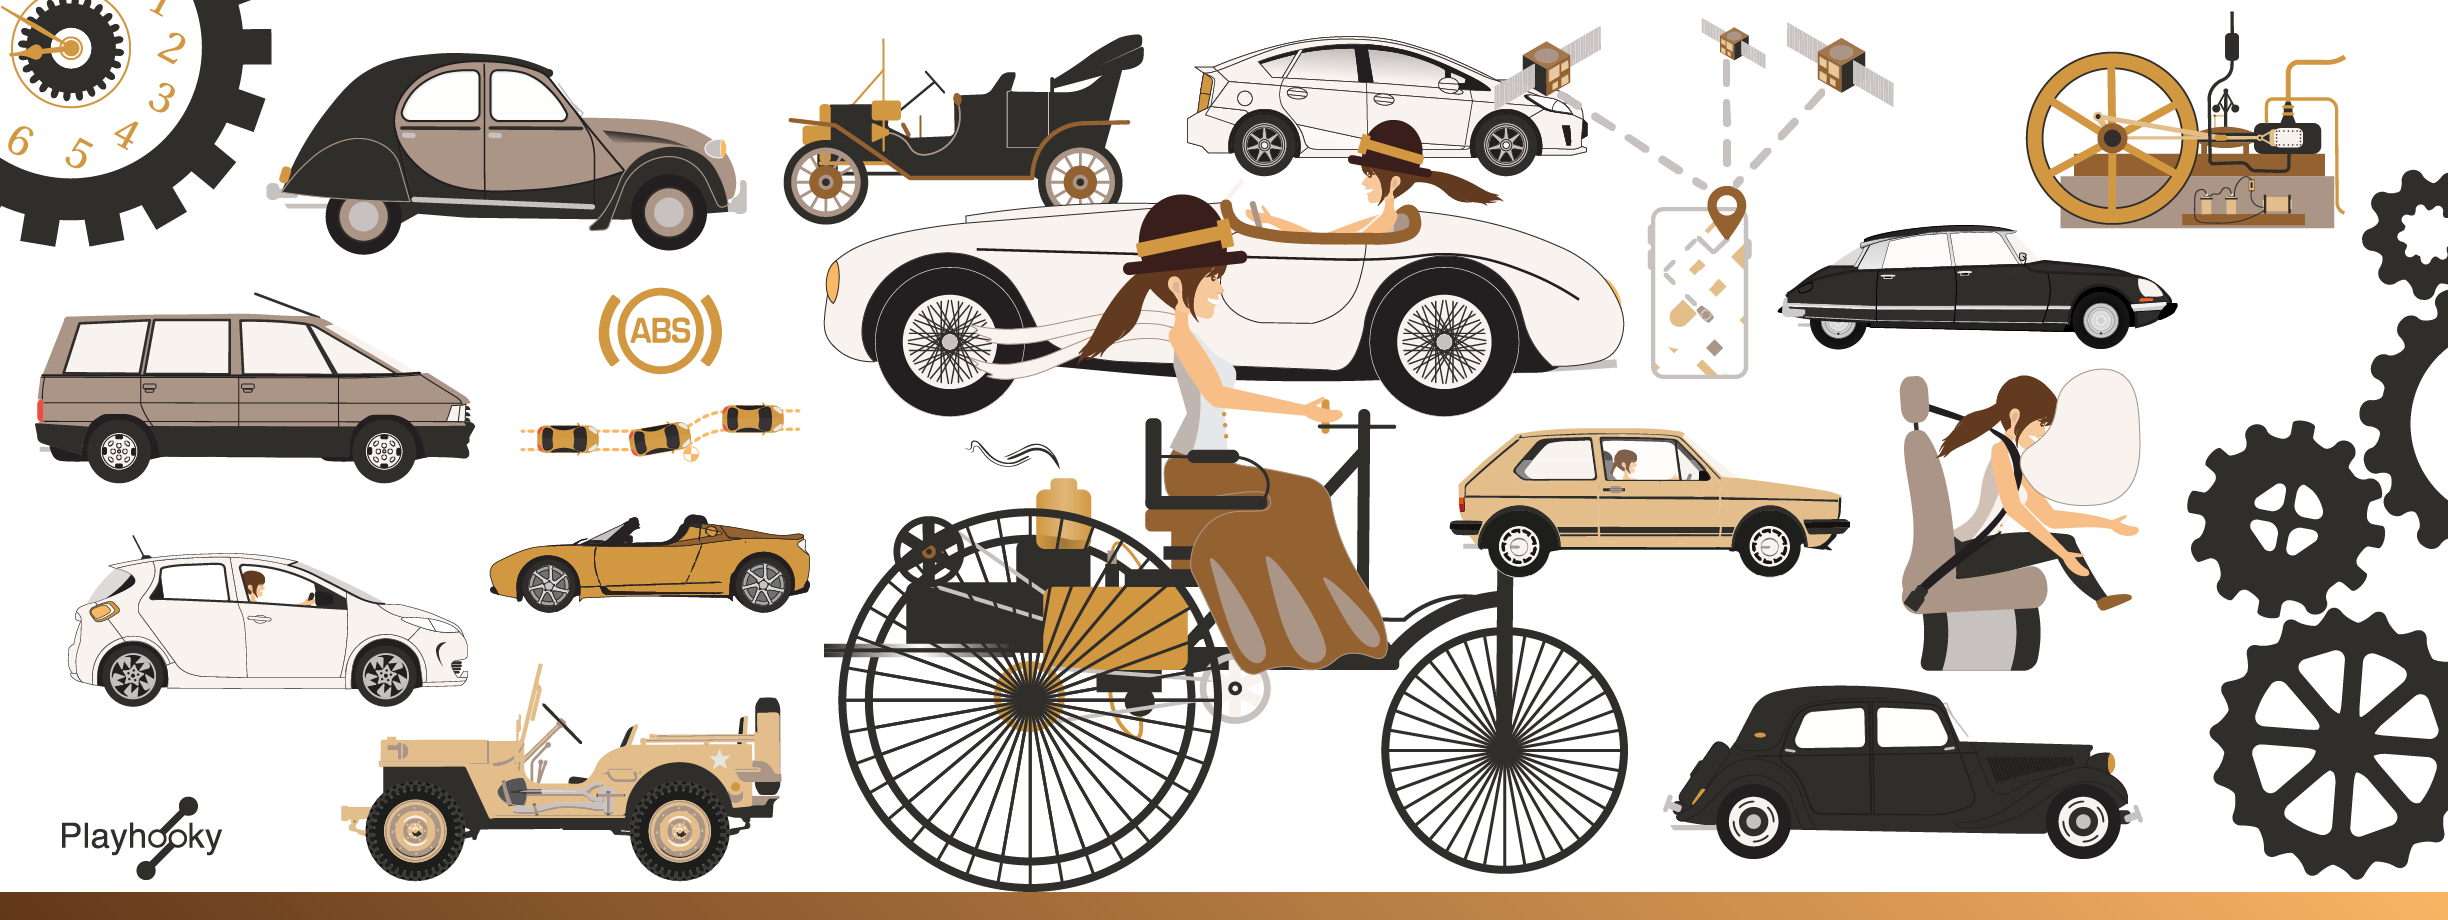 Henry Ford : comment a-t-il inventé la voiture pour tous ?